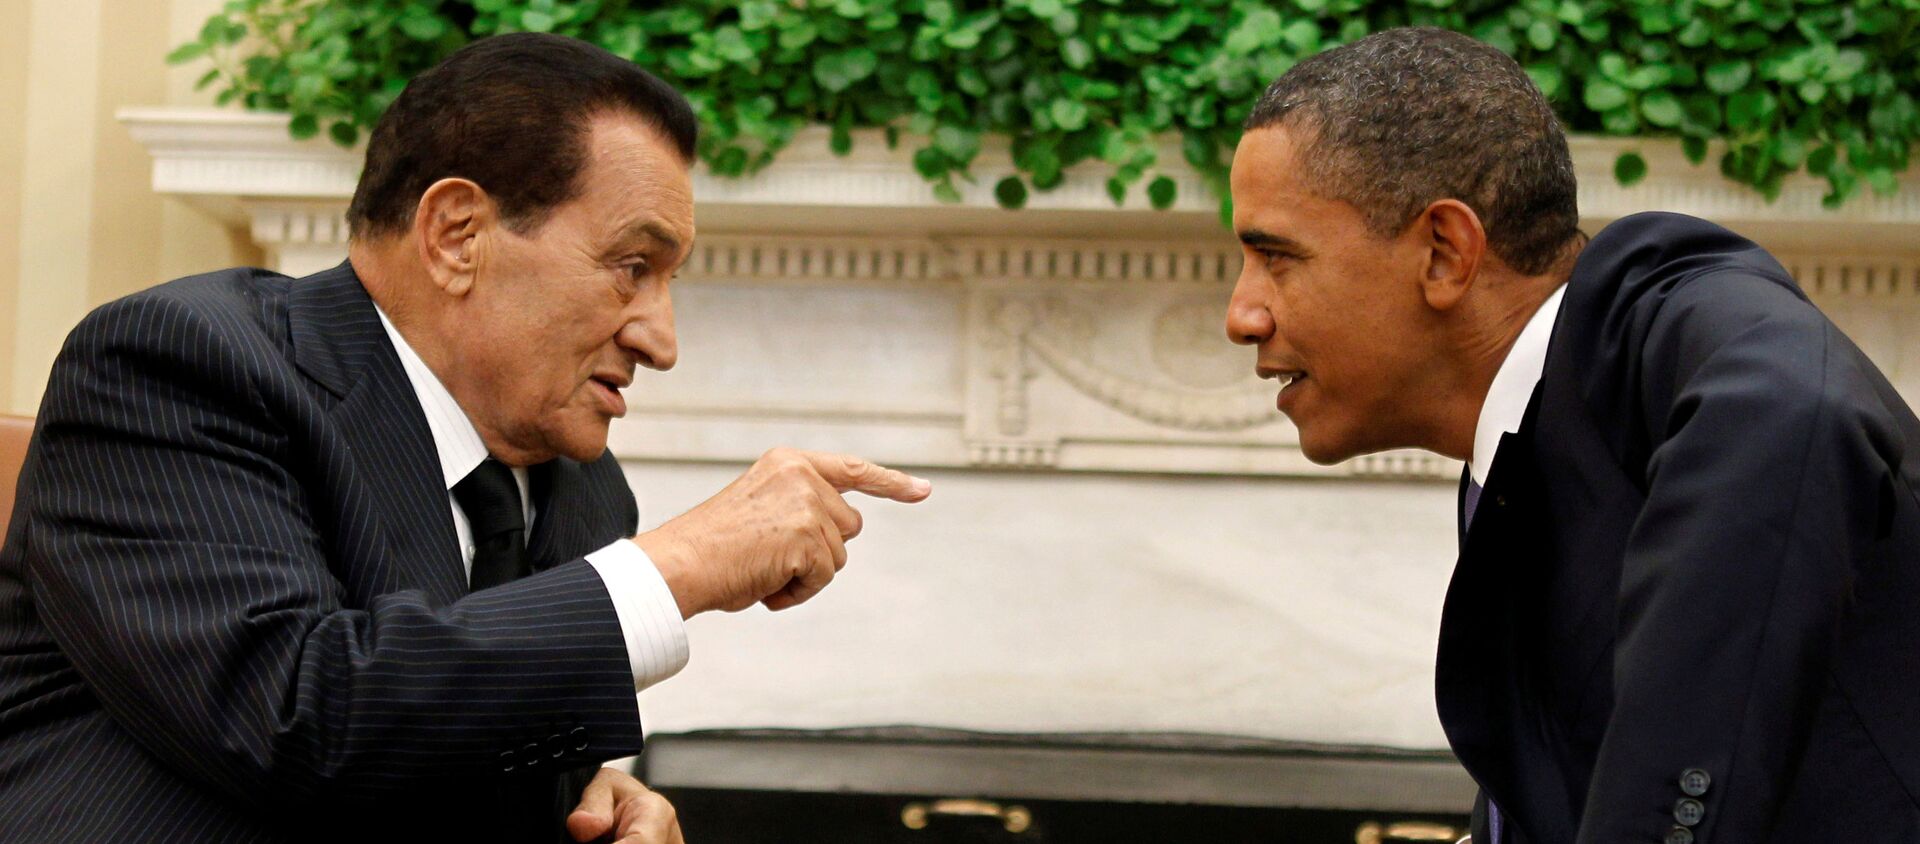 US President Barack Obama (R) meets with Egypt's President Hosni Mubarak in the Oval Office of the White House in Washington September 1, 2010 - Sputnik International, 1920, 26.02.2020